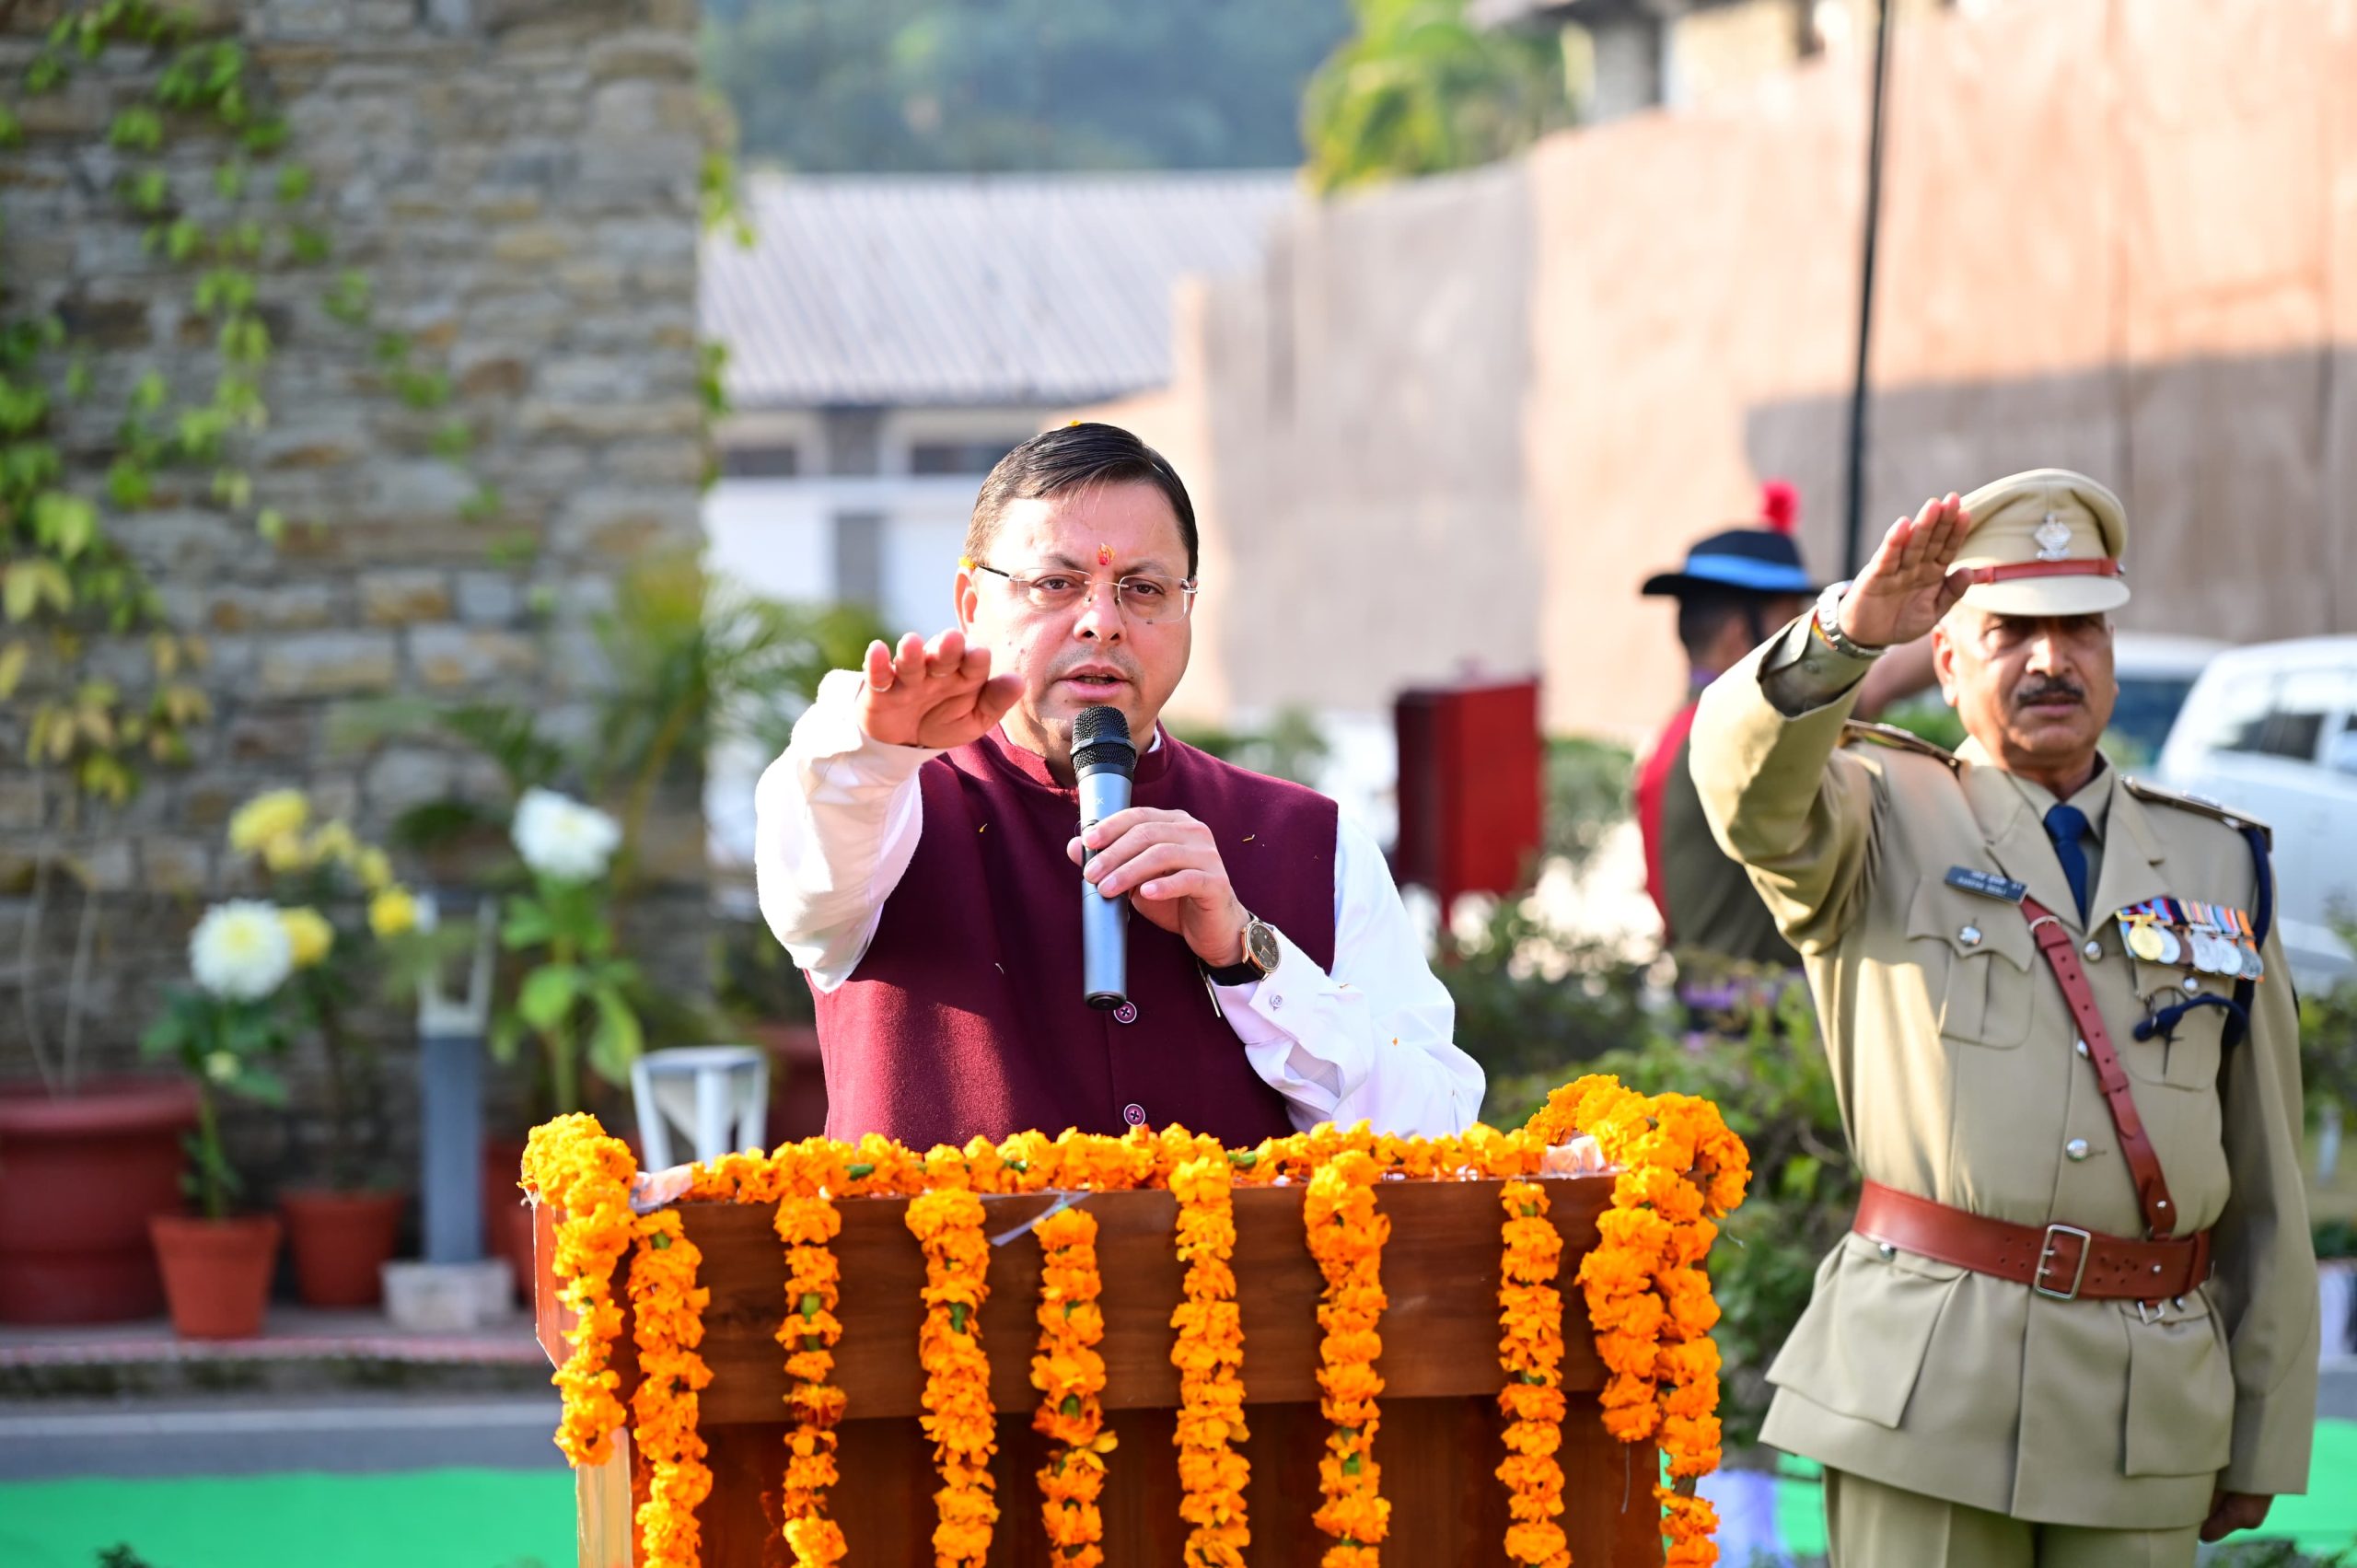 मुख्यमंत्री धामी ने गणतंत्र दिवस के अवसर पर मुख्यमंत्री आवास में राष्ट्रीय ध्वज फहराया,इस अवसर पर उन्होंने सभी को संविधान की उद्देशिका की शपथ दिलाई।